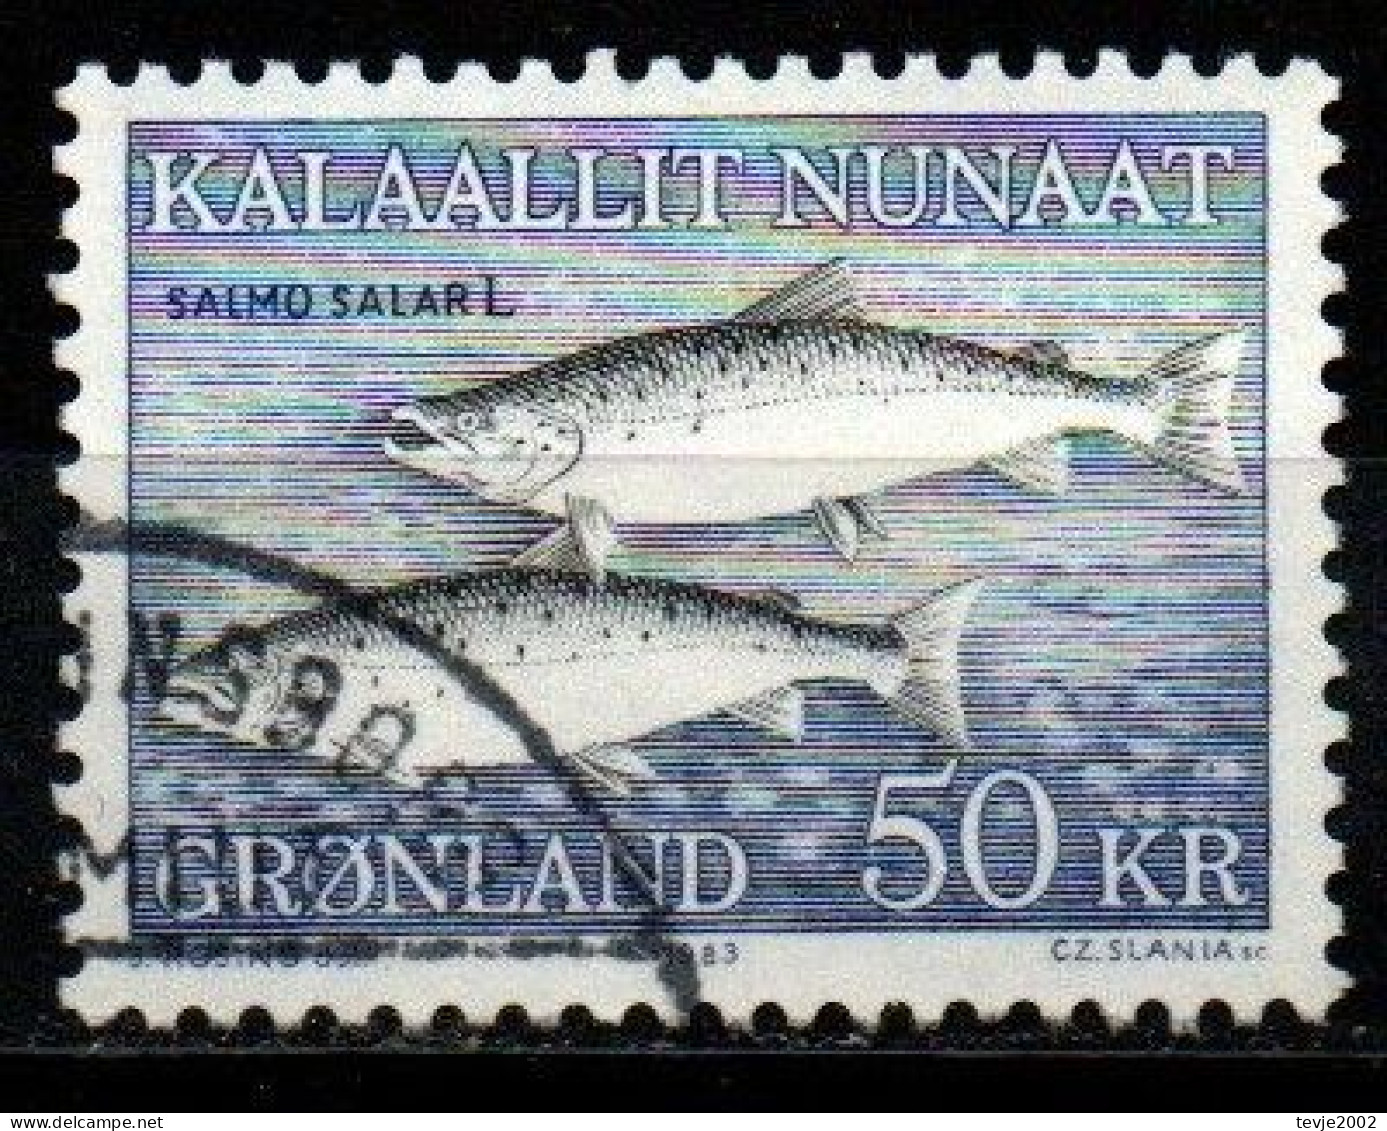 Grönland 1983 - Mi.Nr. 140 - Gestempelt Used - Tiere Animals Fische Fishes - Oblitérés